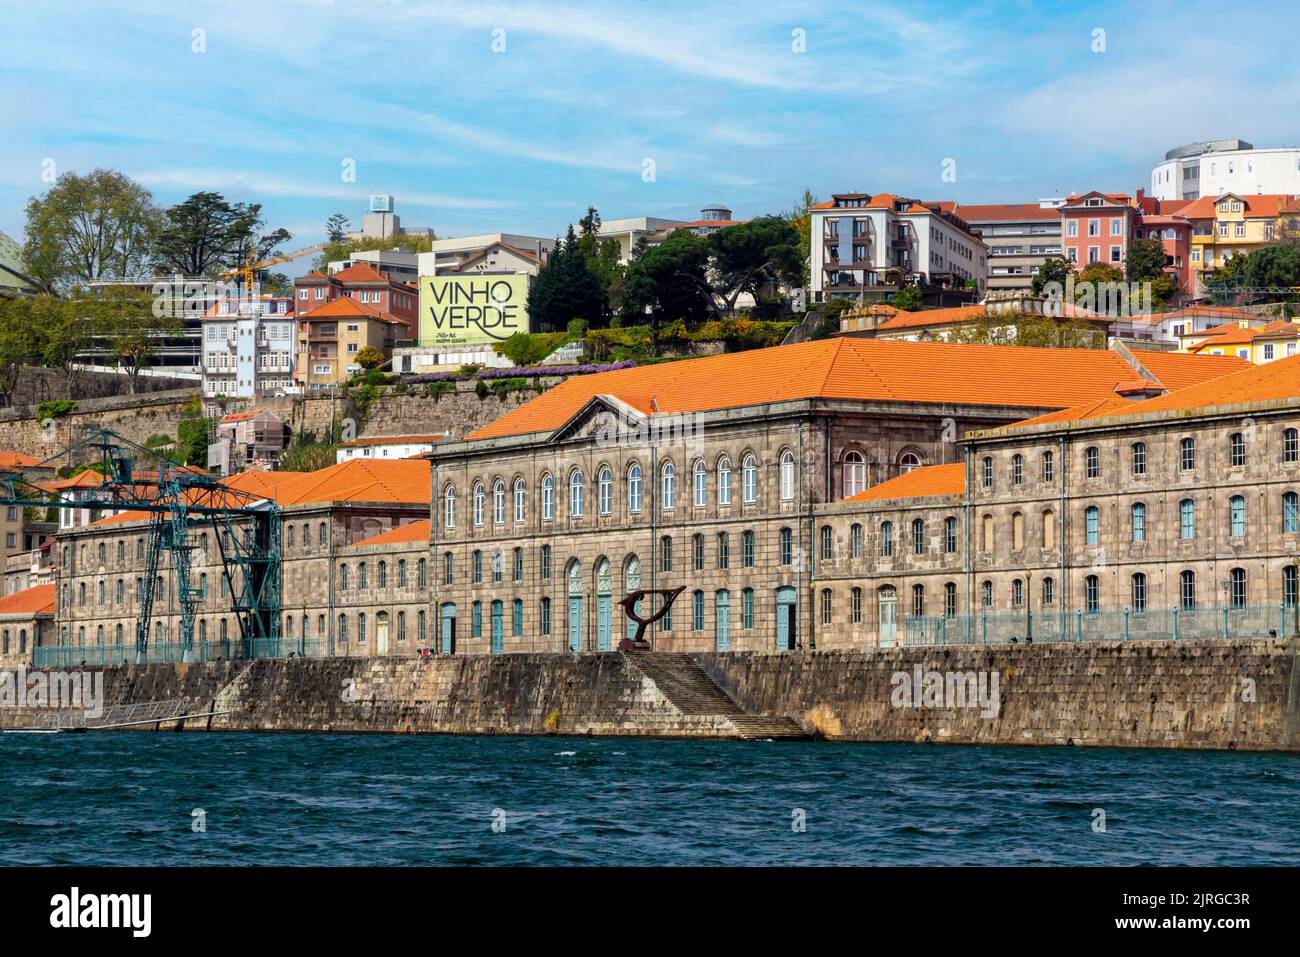 Porto Customshouse Congress Centre or Centro de Congressos da Alfândega on the banks of the River Douro in Porto Portugal originally built in 1822. Stock Photo